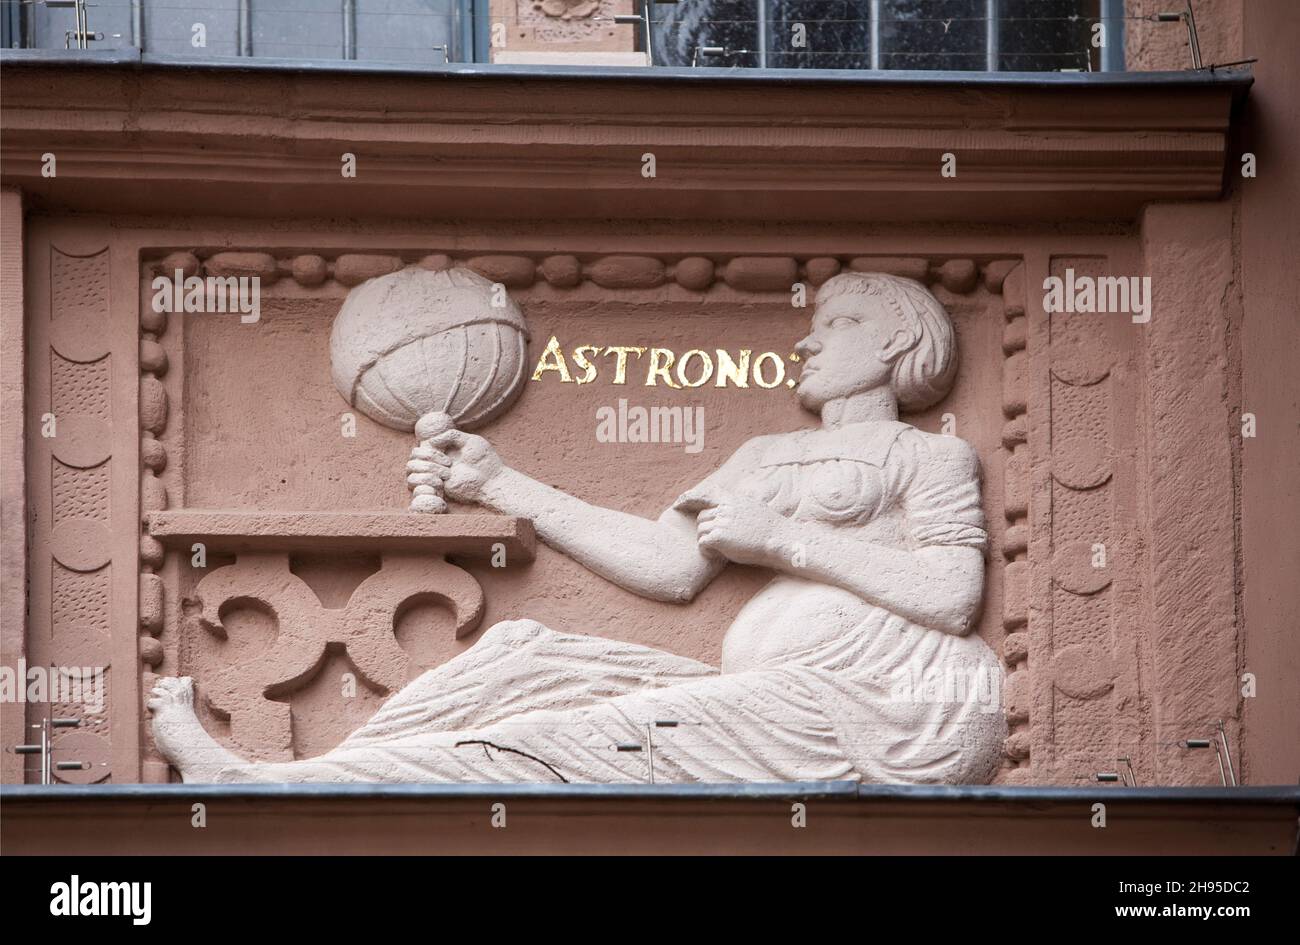 Astrono, astronomie, figure à l'hôtel de ville de Lemgo, Rhénanie-du-Nord-Westphalie, Allemagne, Europe Banque D'Images